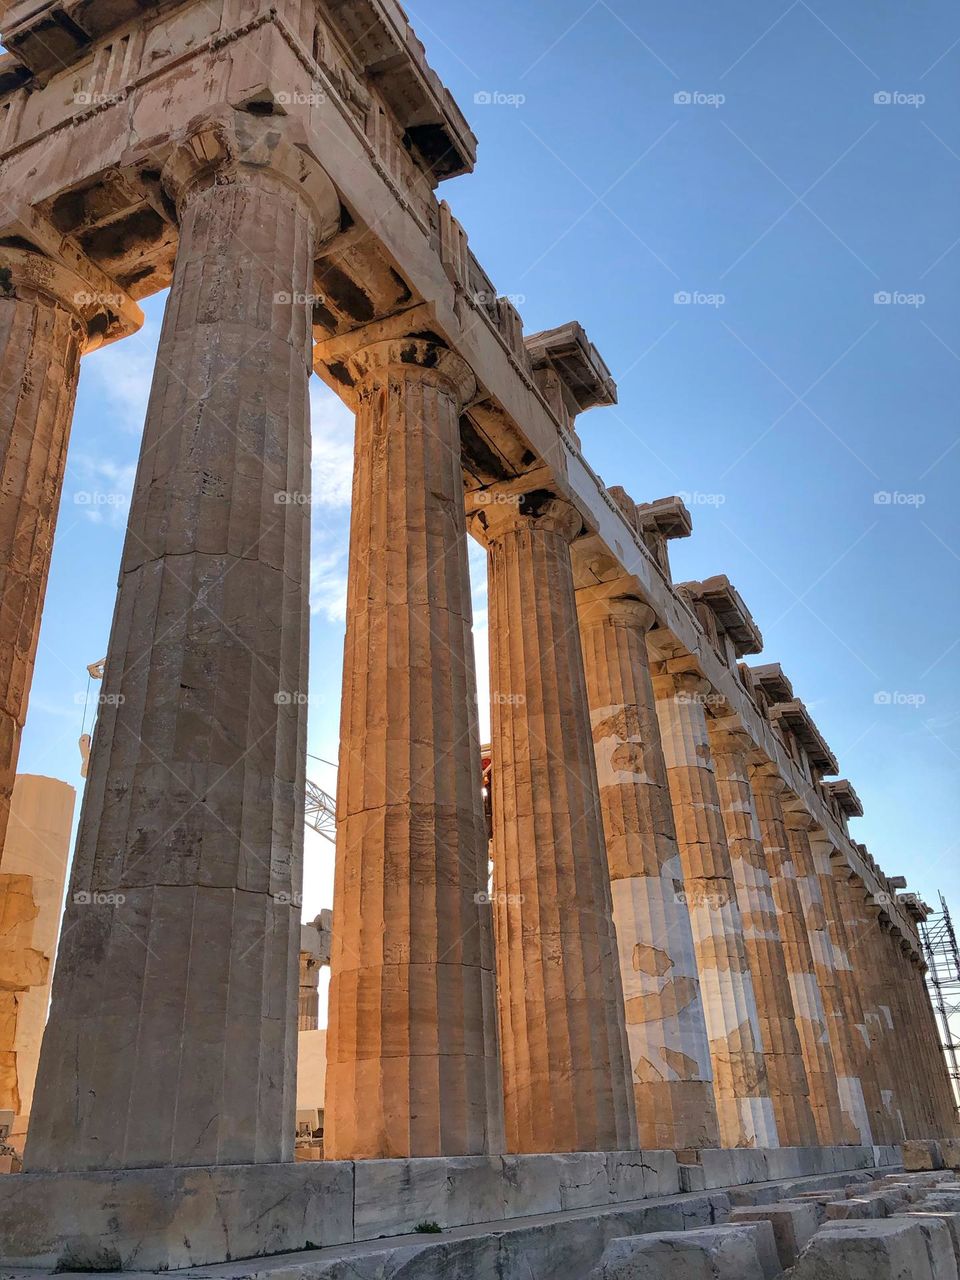 Parthenon, Acropolis, Athens, Greece, history, architecture,